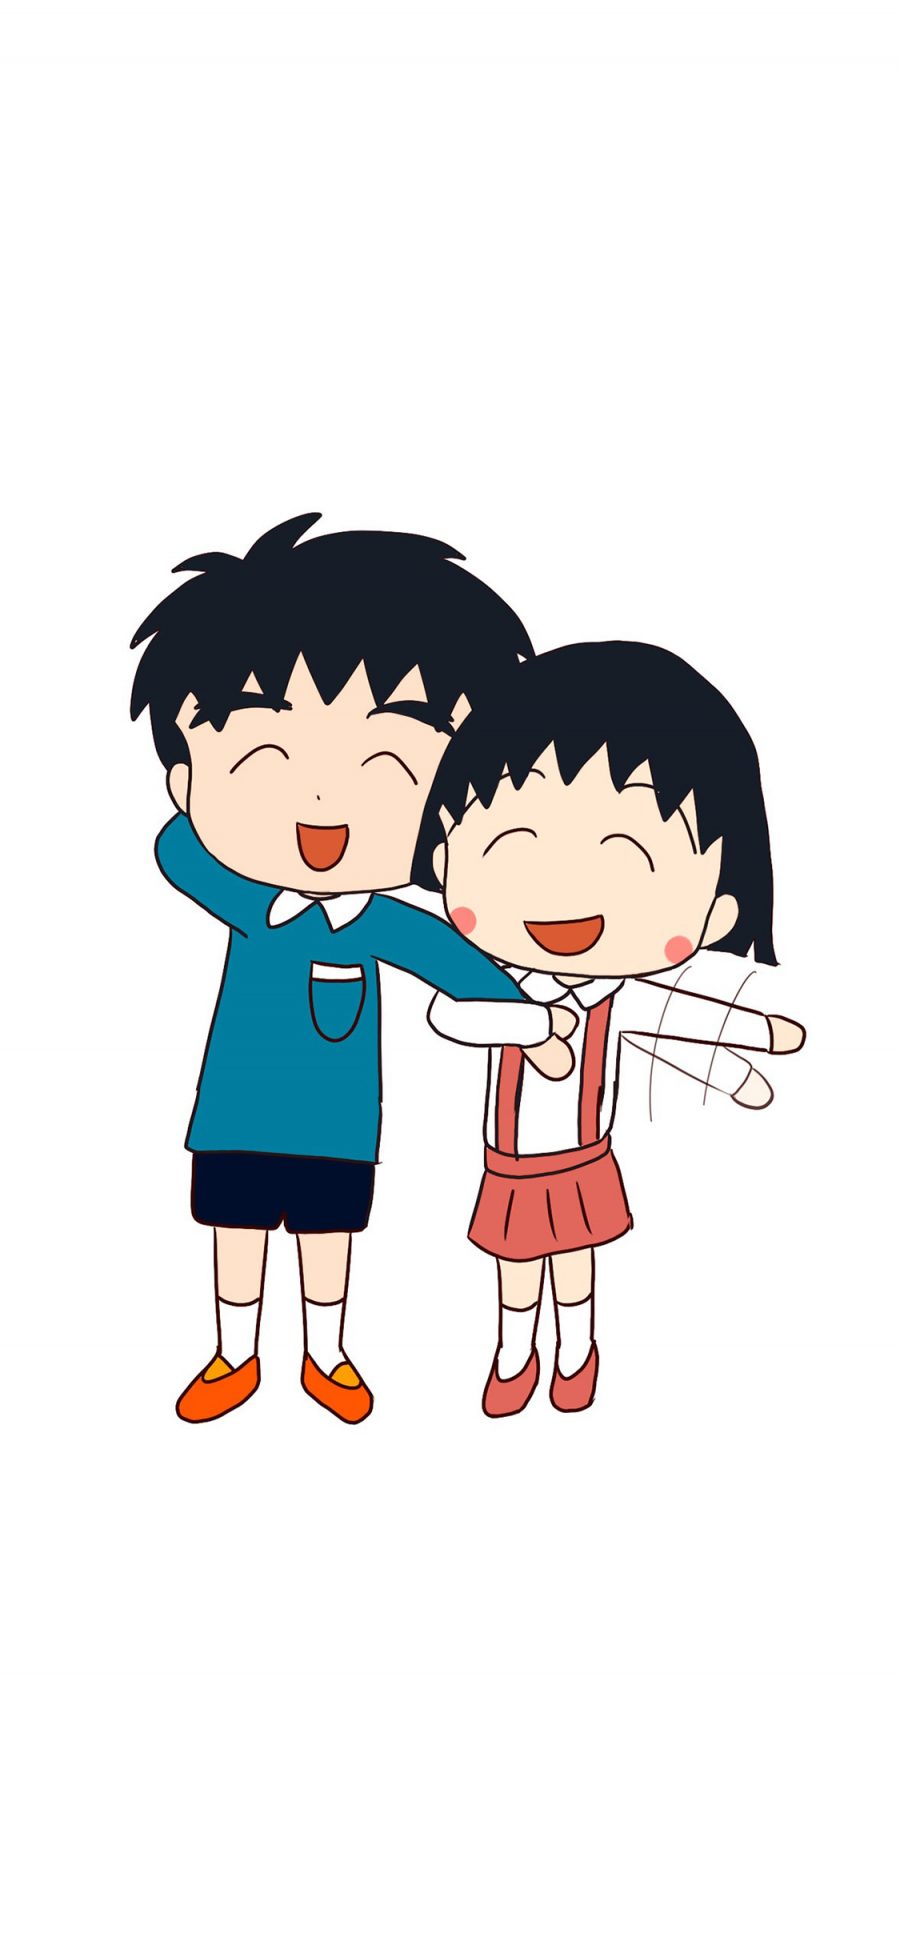 [2436×1125]樱桃小丸子 大野健一 日本 漫画 卡通 开心 笑 苹果手机动漫壁纸图片